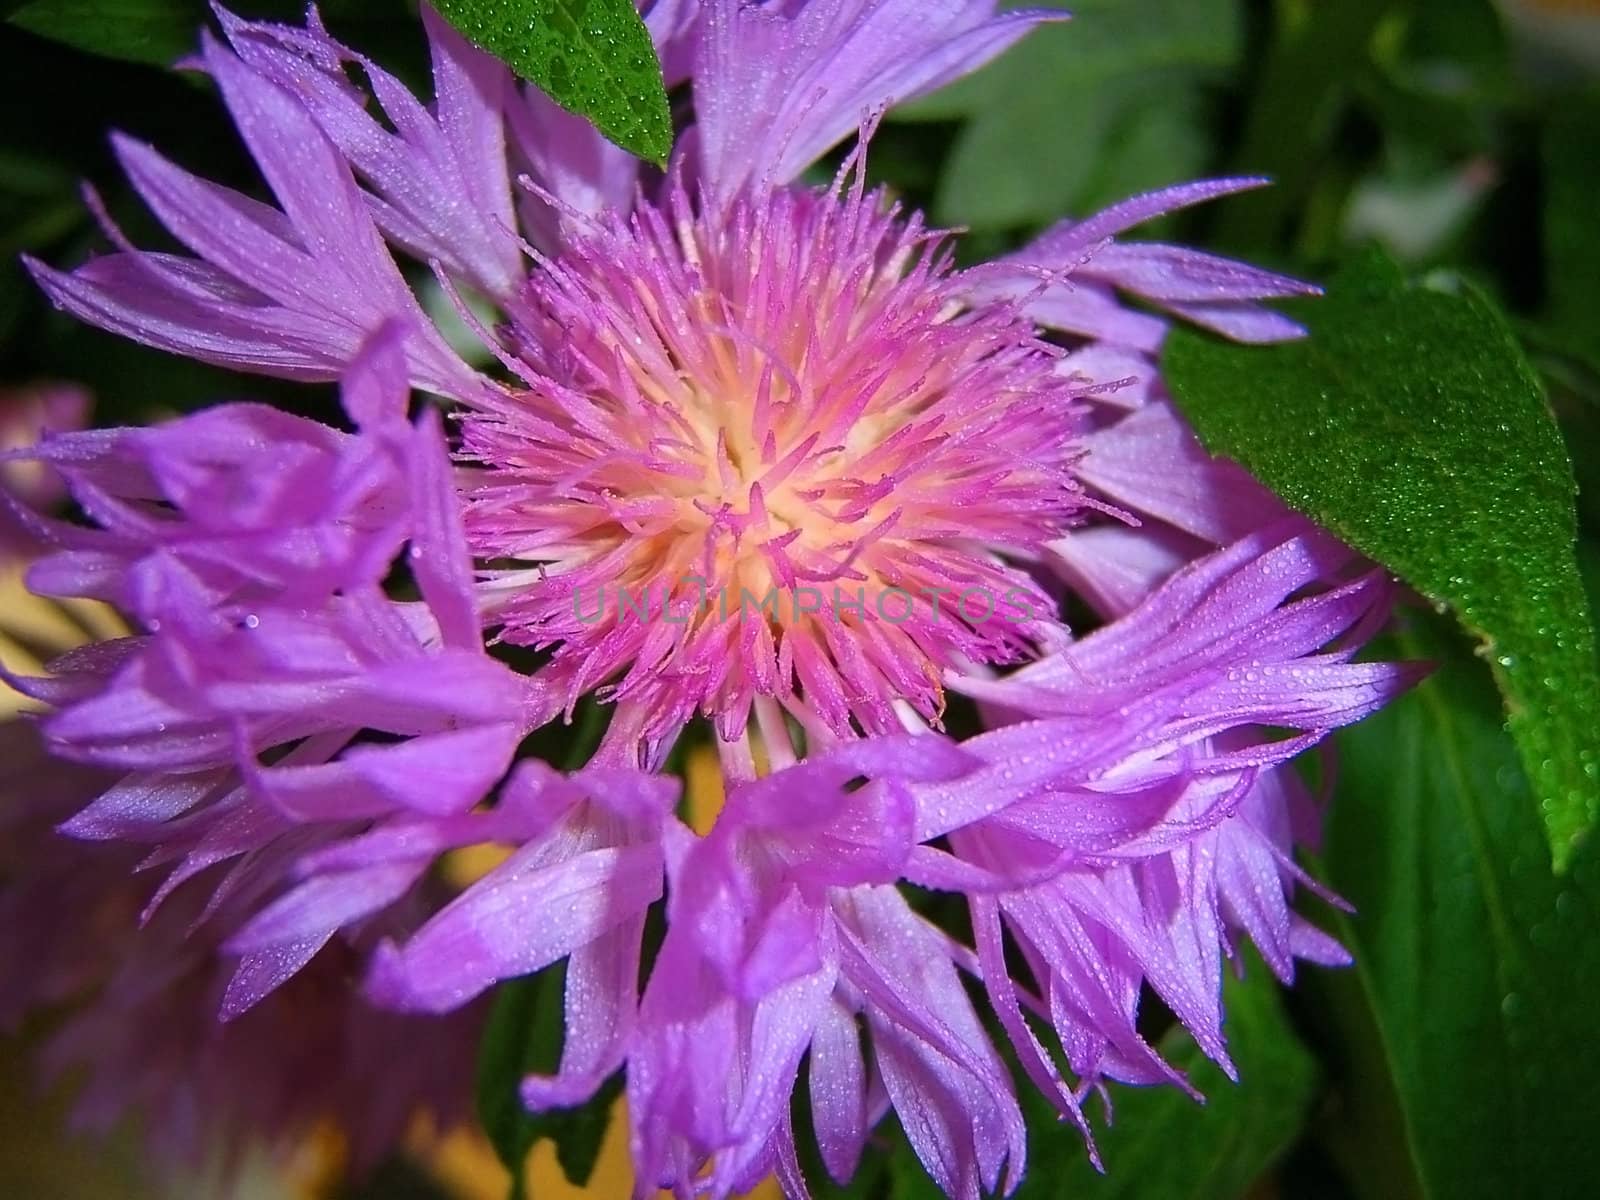 Violet flower, medicinal plant, vegetation, petal by Viktoha